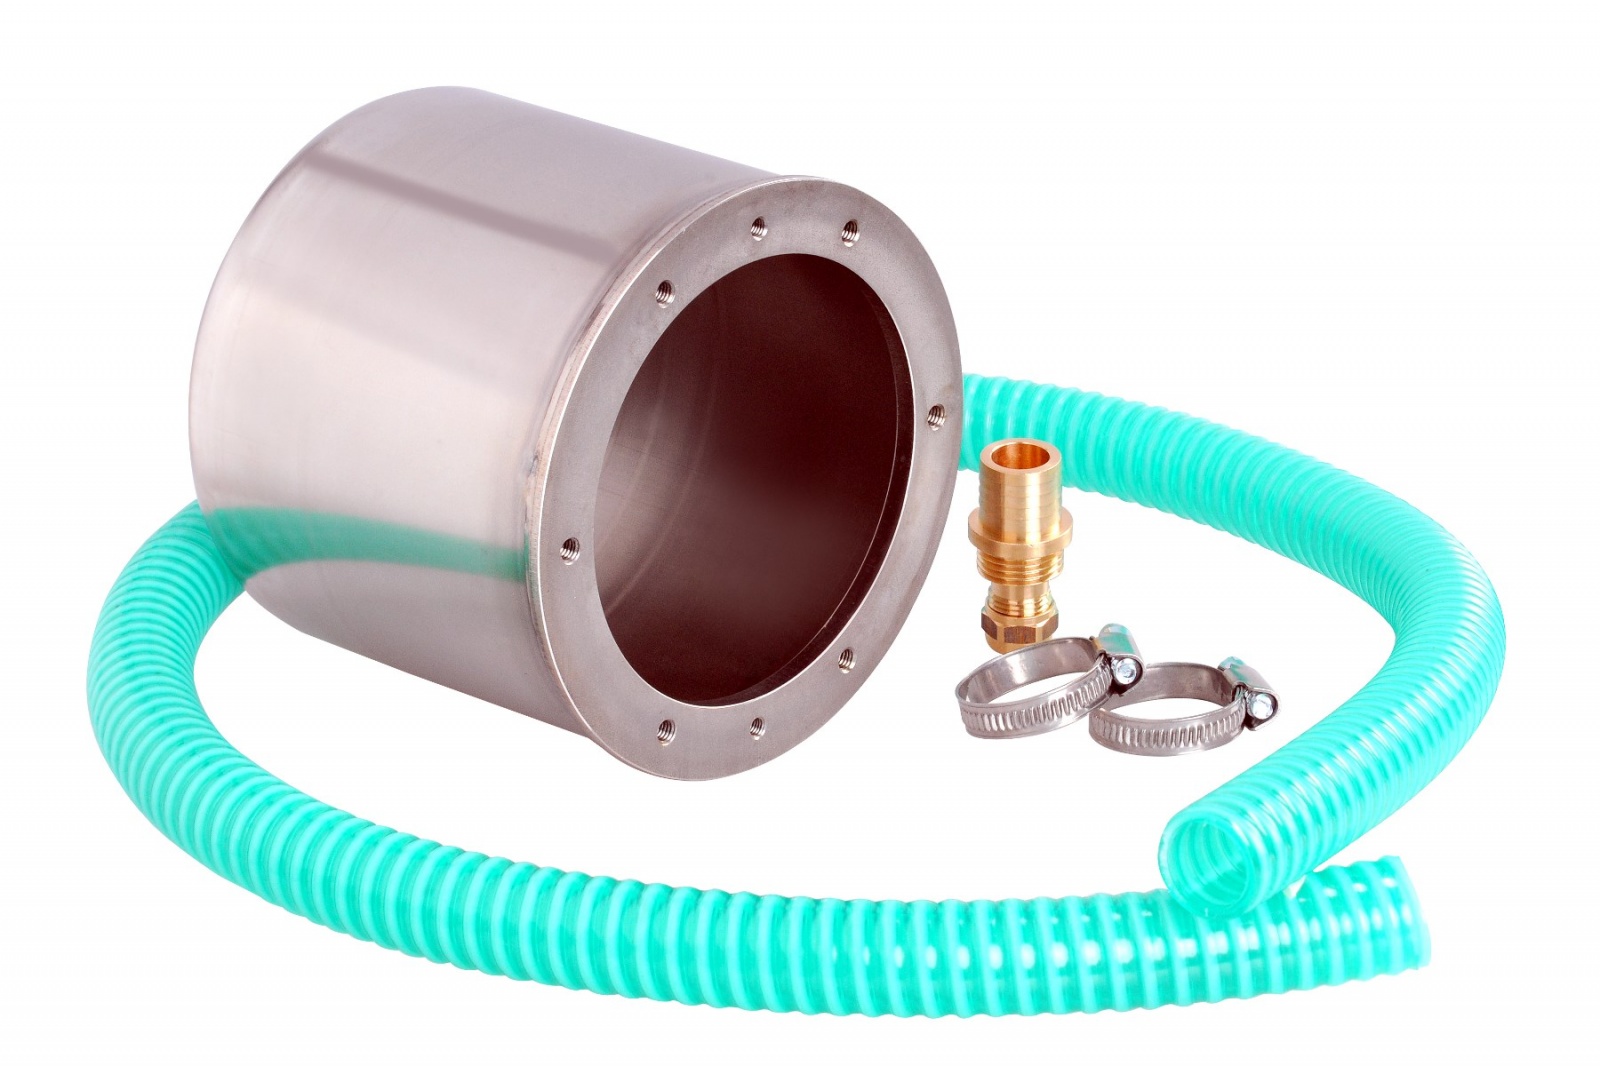 Boitiers d’encastrement en inox 316L pour projecteur subaquatique ø 146 mm, pour bassin inox, béton, carrelé ou liner.